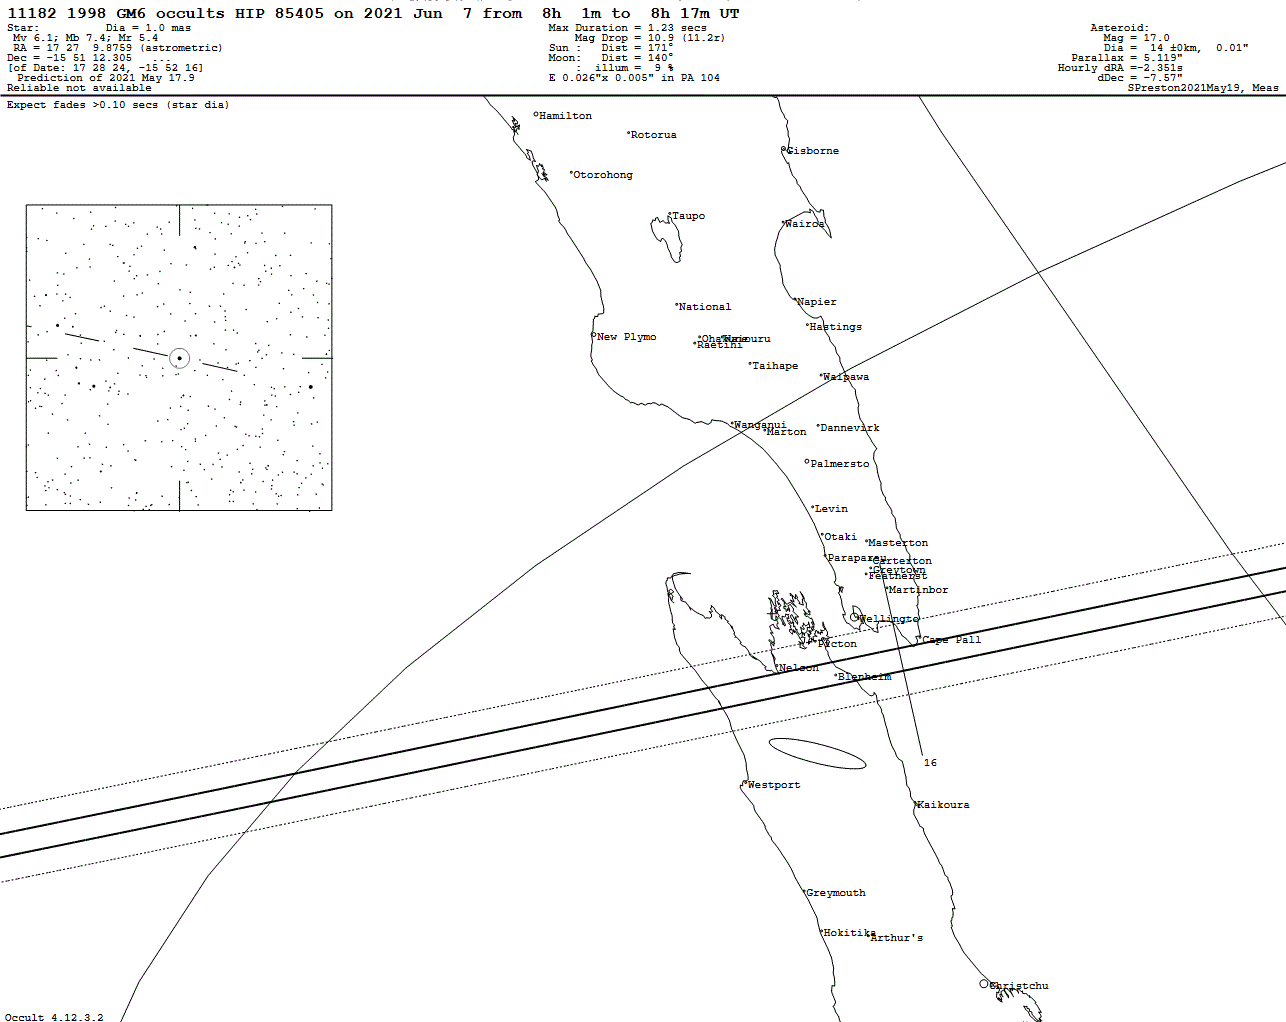 1998 GM6 Update Map